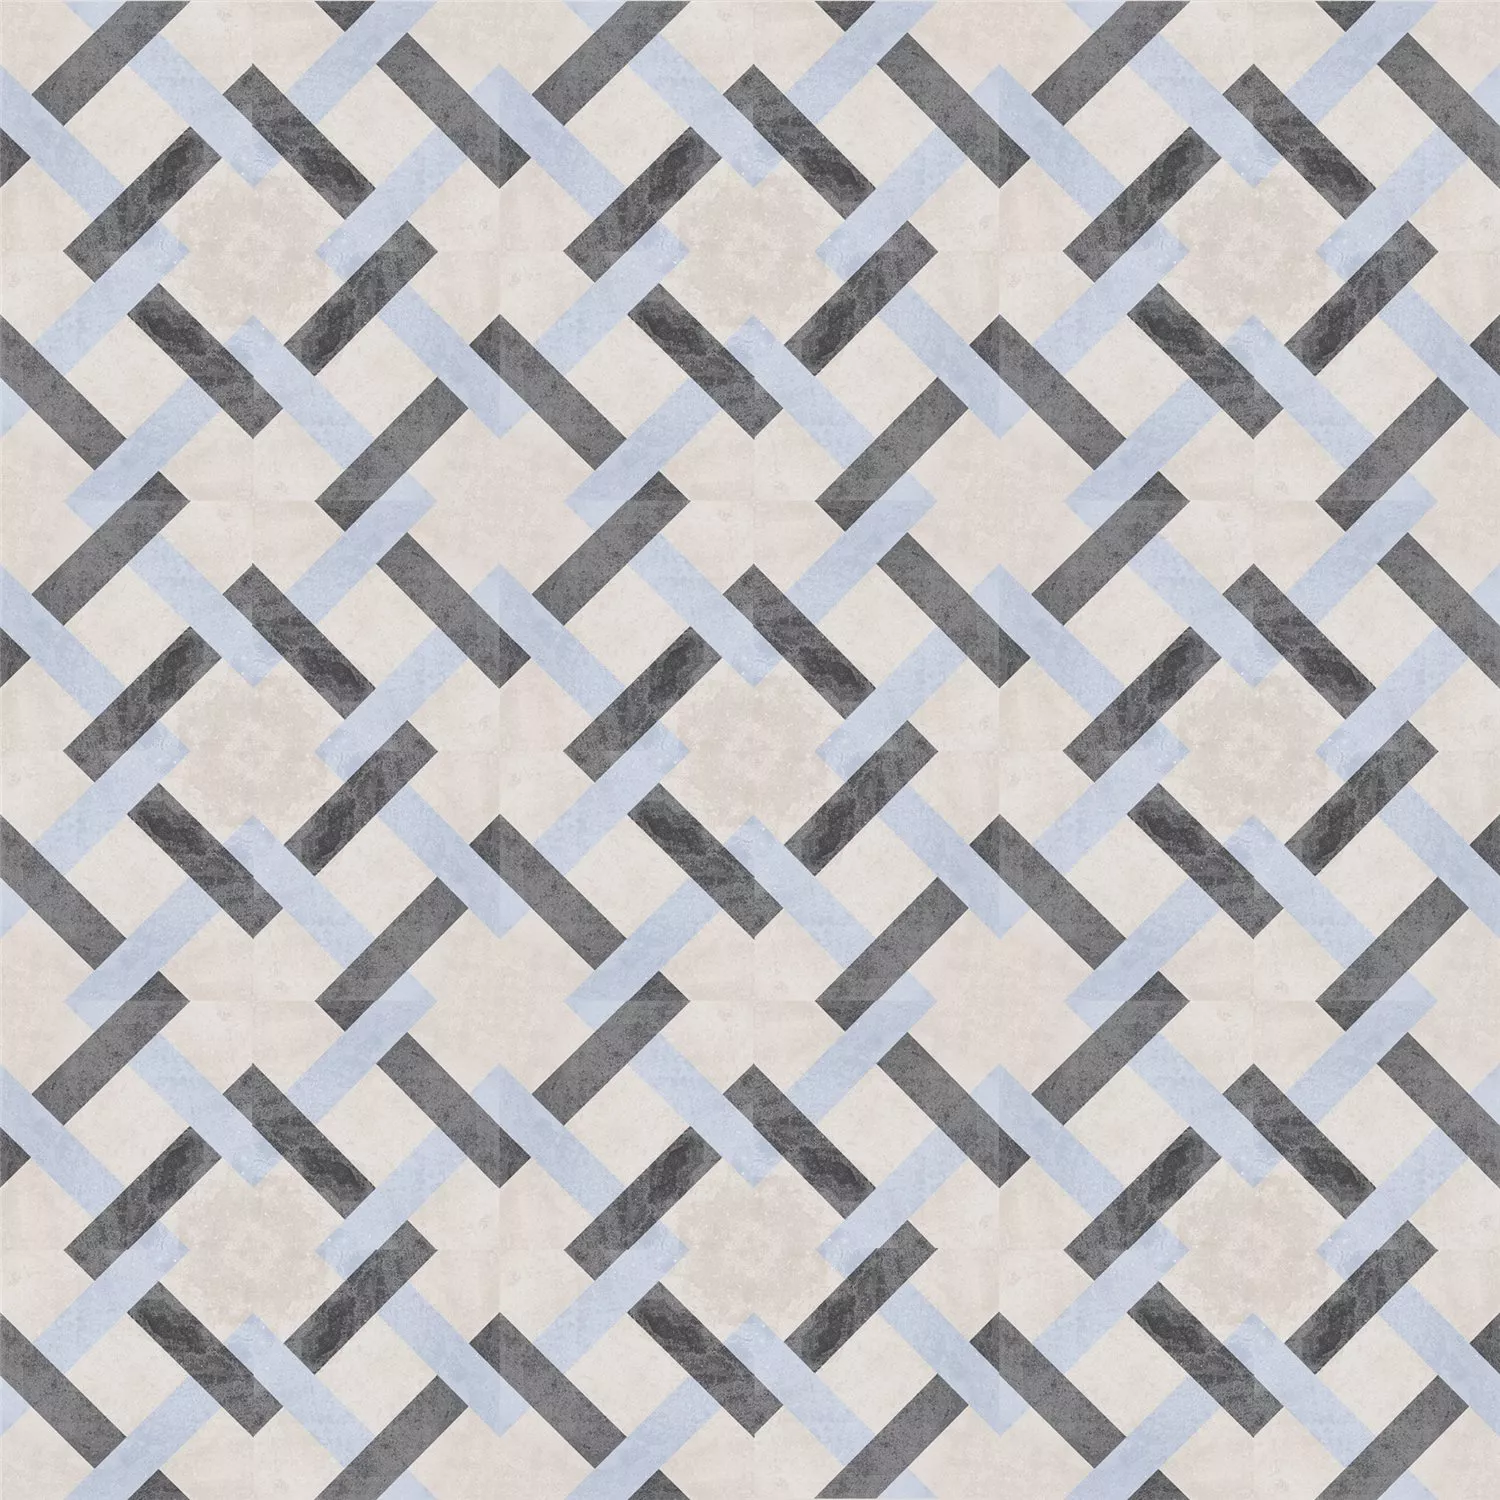 Sample Cement Tiles Retro Optic Gris Floor Tiles Pablo 18,6x18,6cm